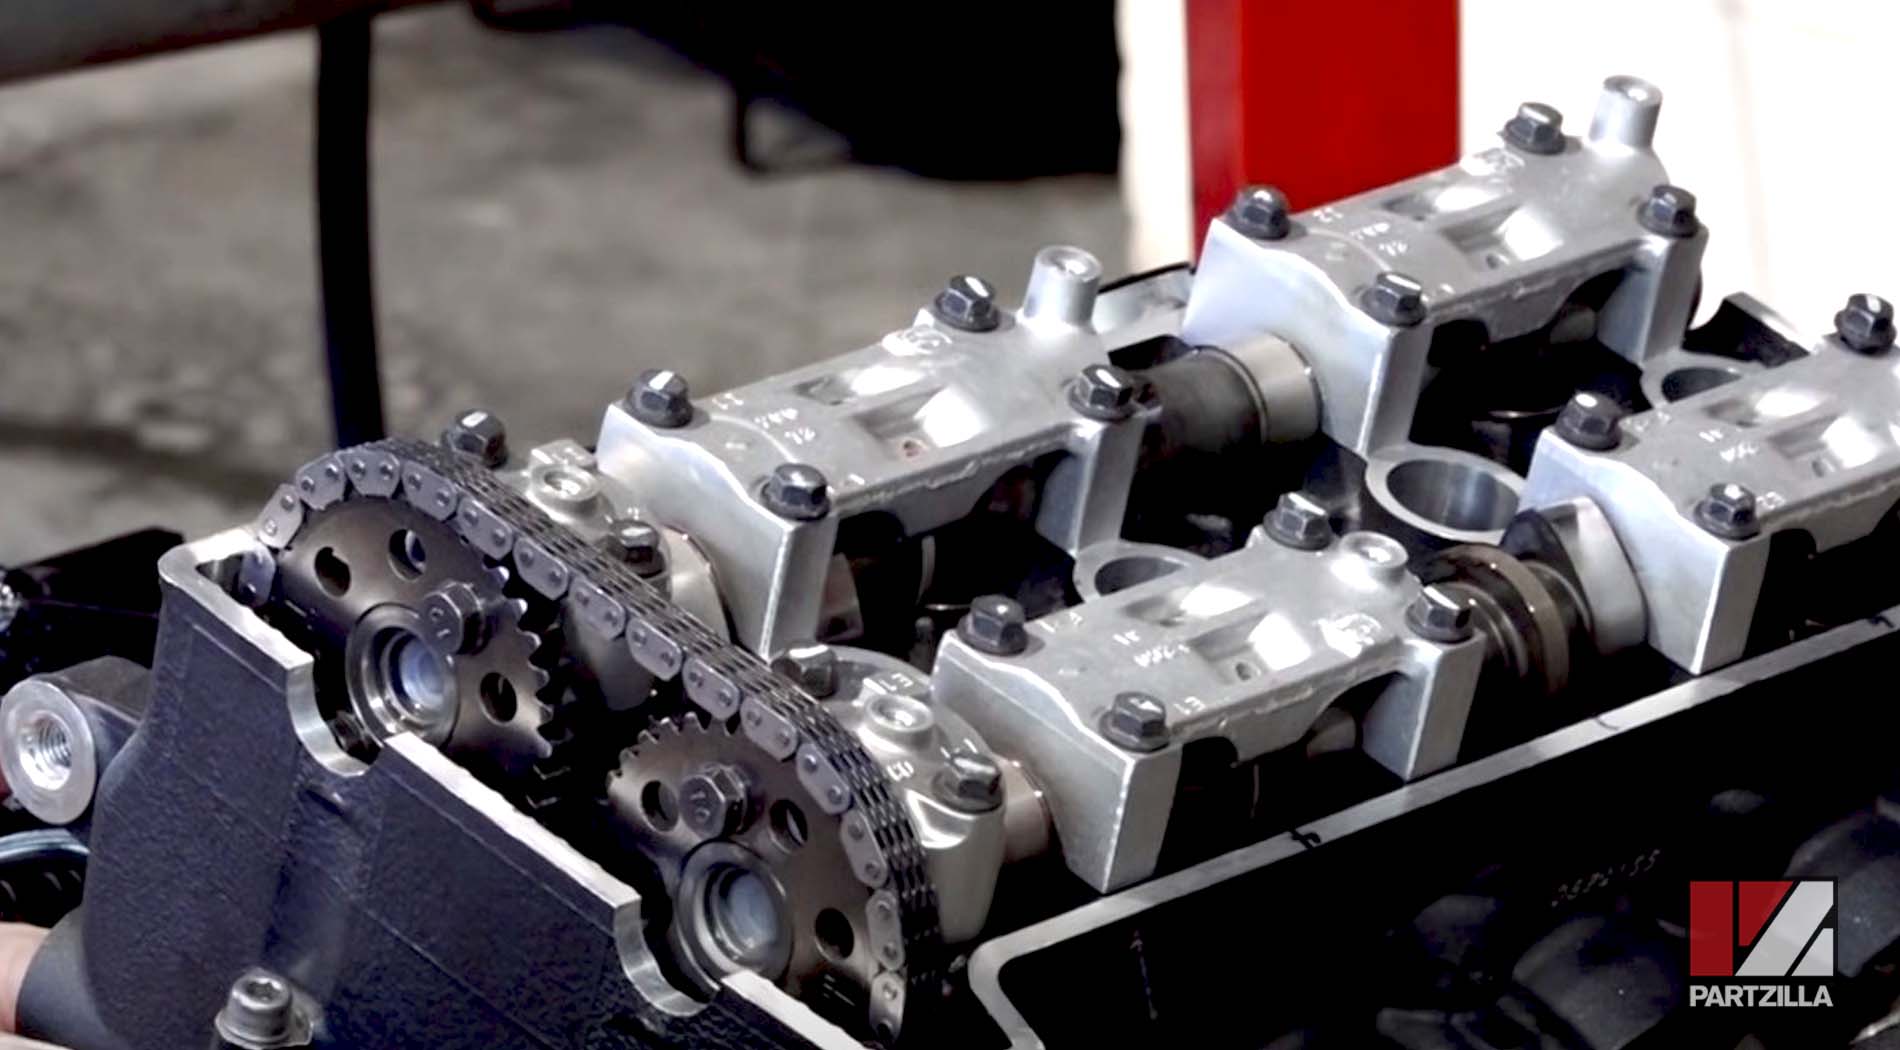 Yamaha R6 engine rebuild camshafts